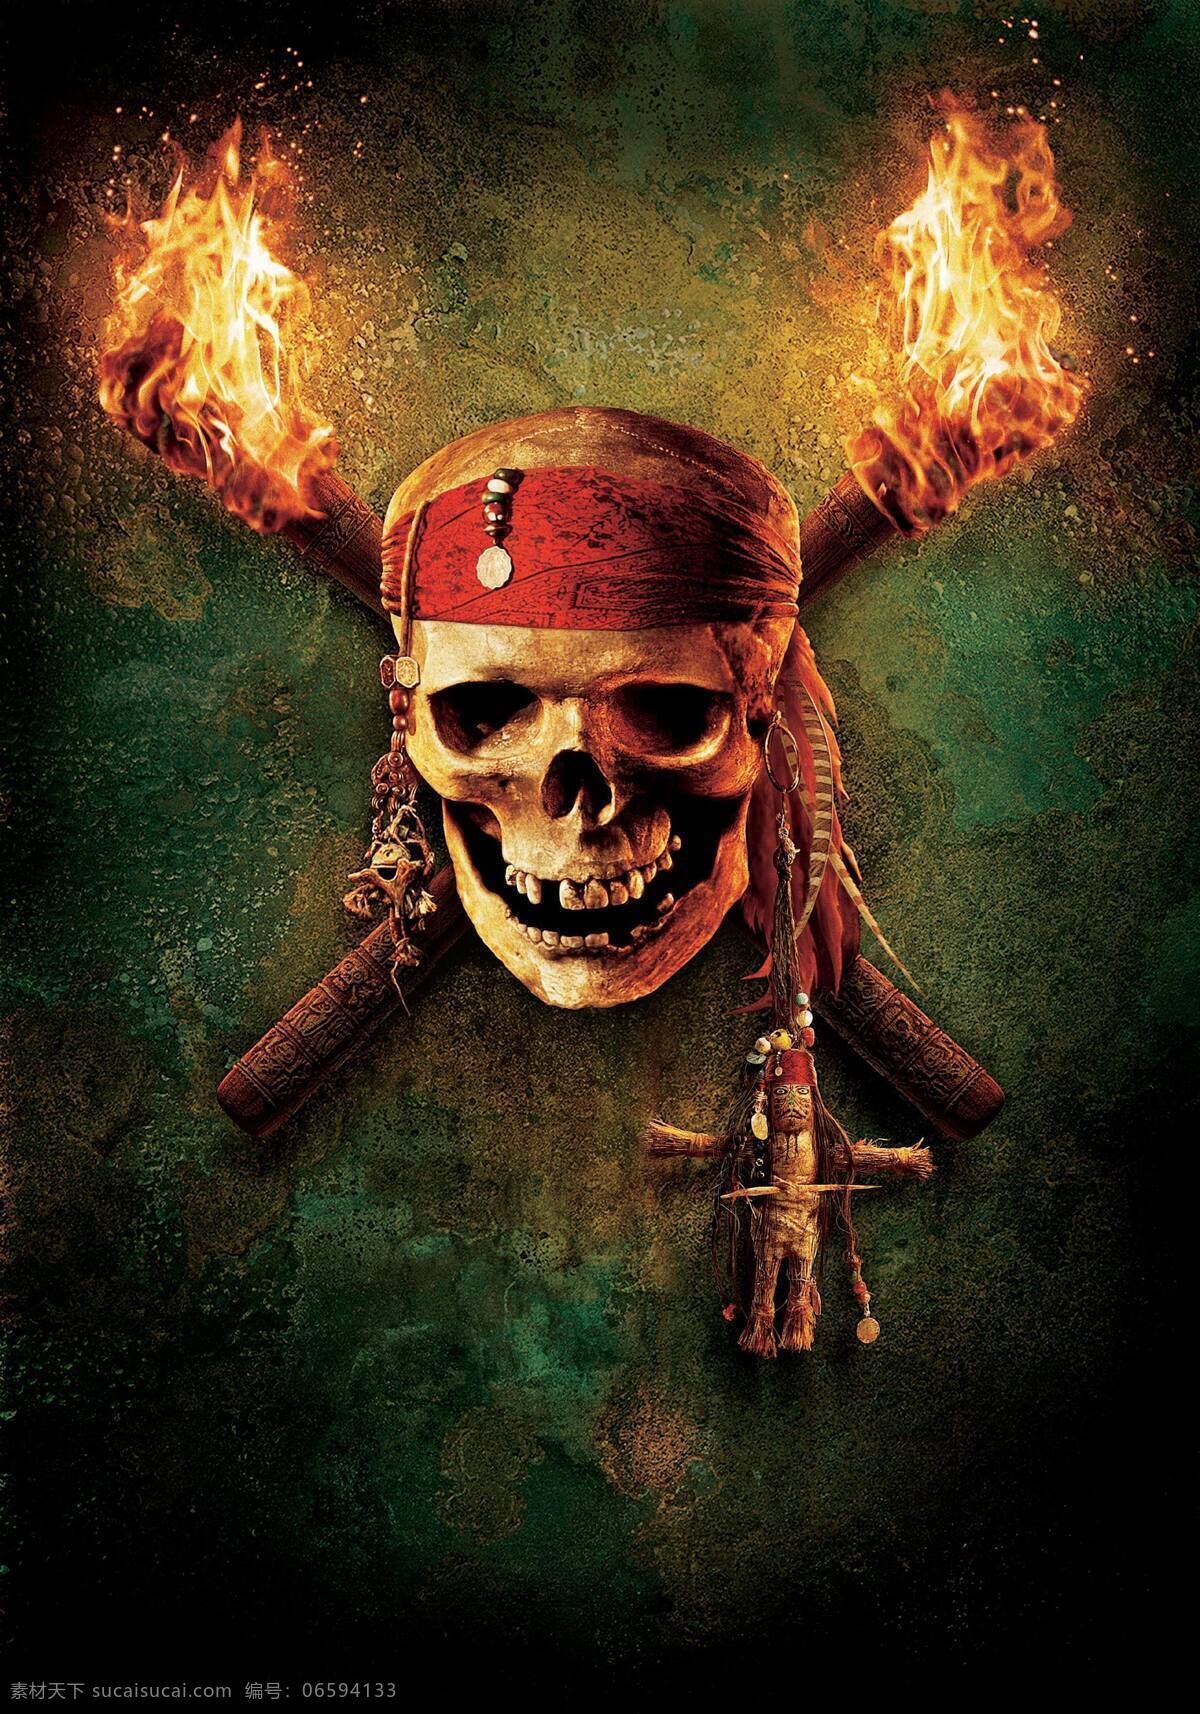 加勒比海盗 海报 冒险 迪士尼 旅程 骷髅头 火把 影视娱乐 文化艺术